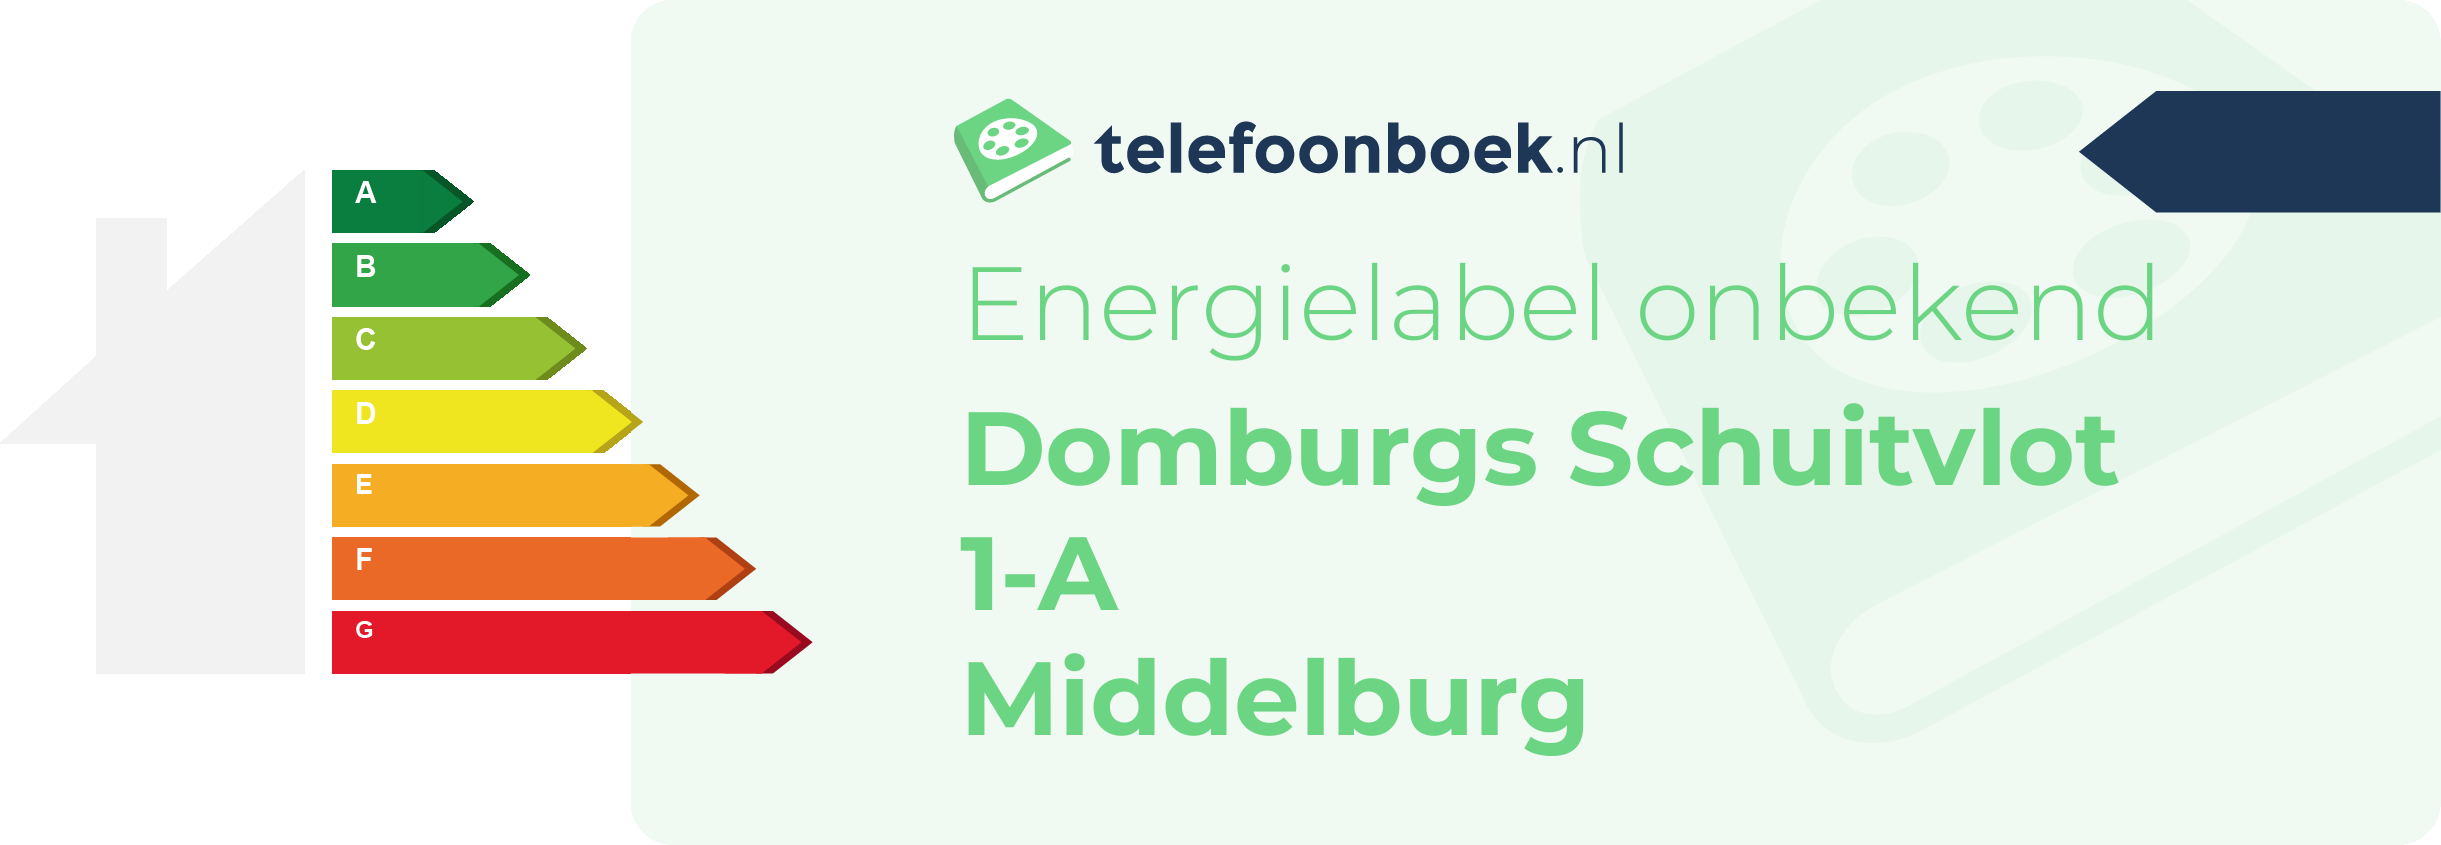 Energielabel Domburgs Schuitvlot 1-A Middelburg